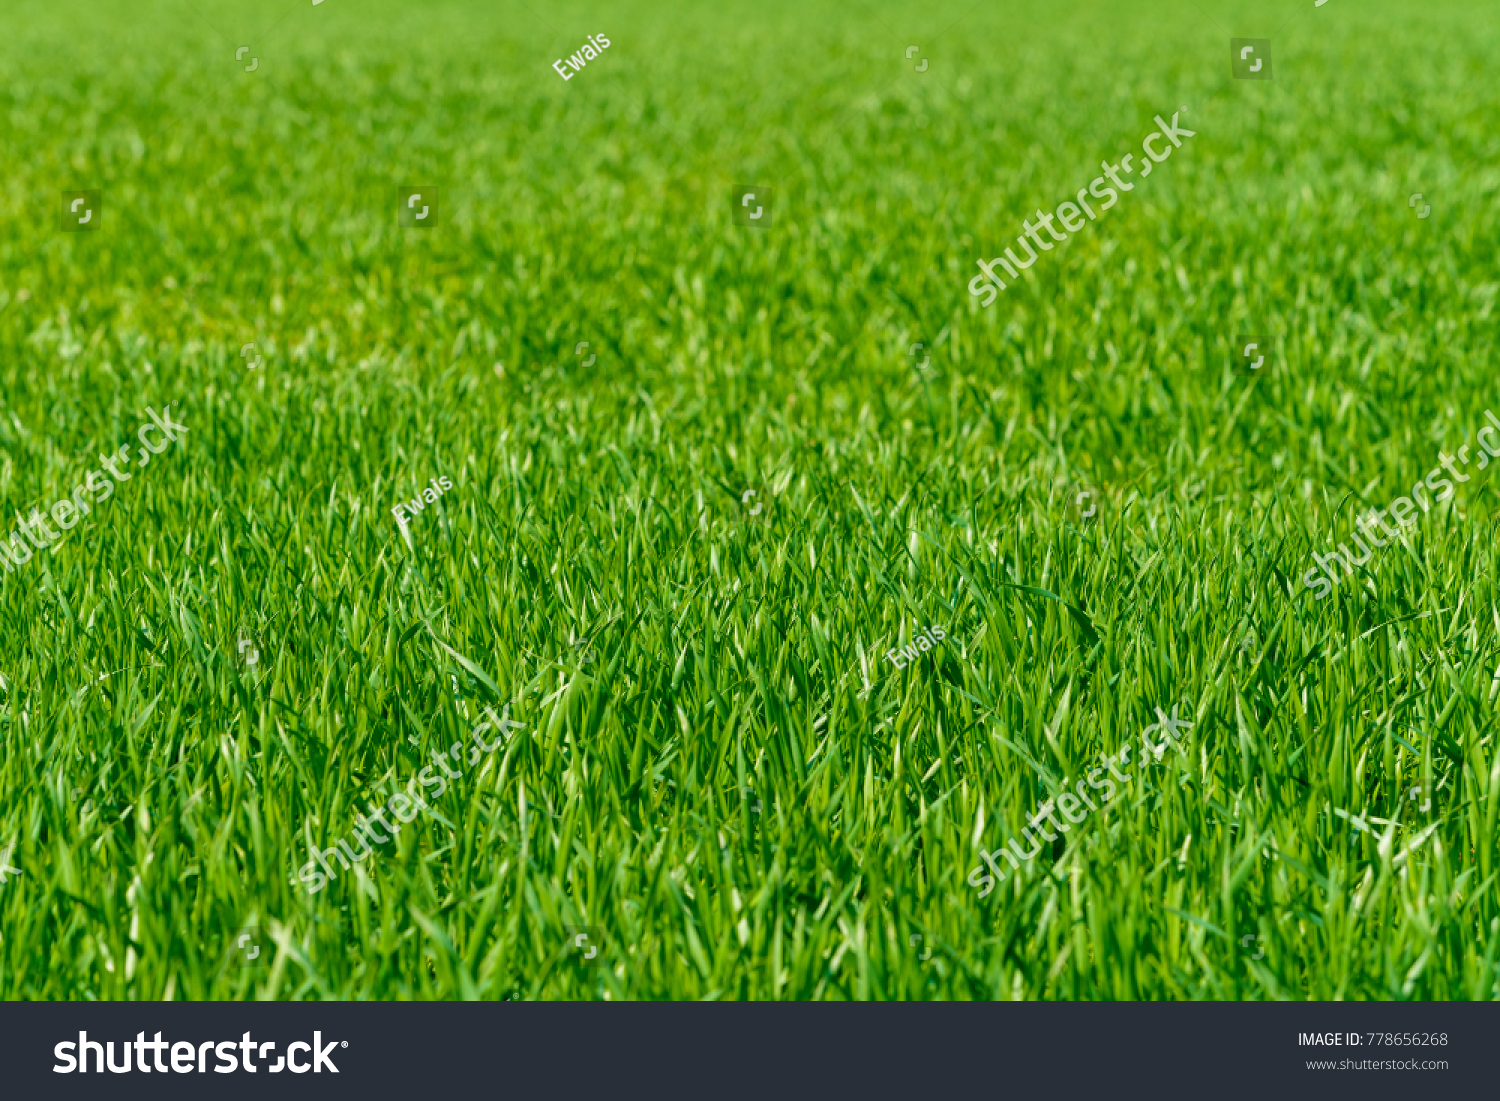 Background of a green grass. Green grass texture #778656268